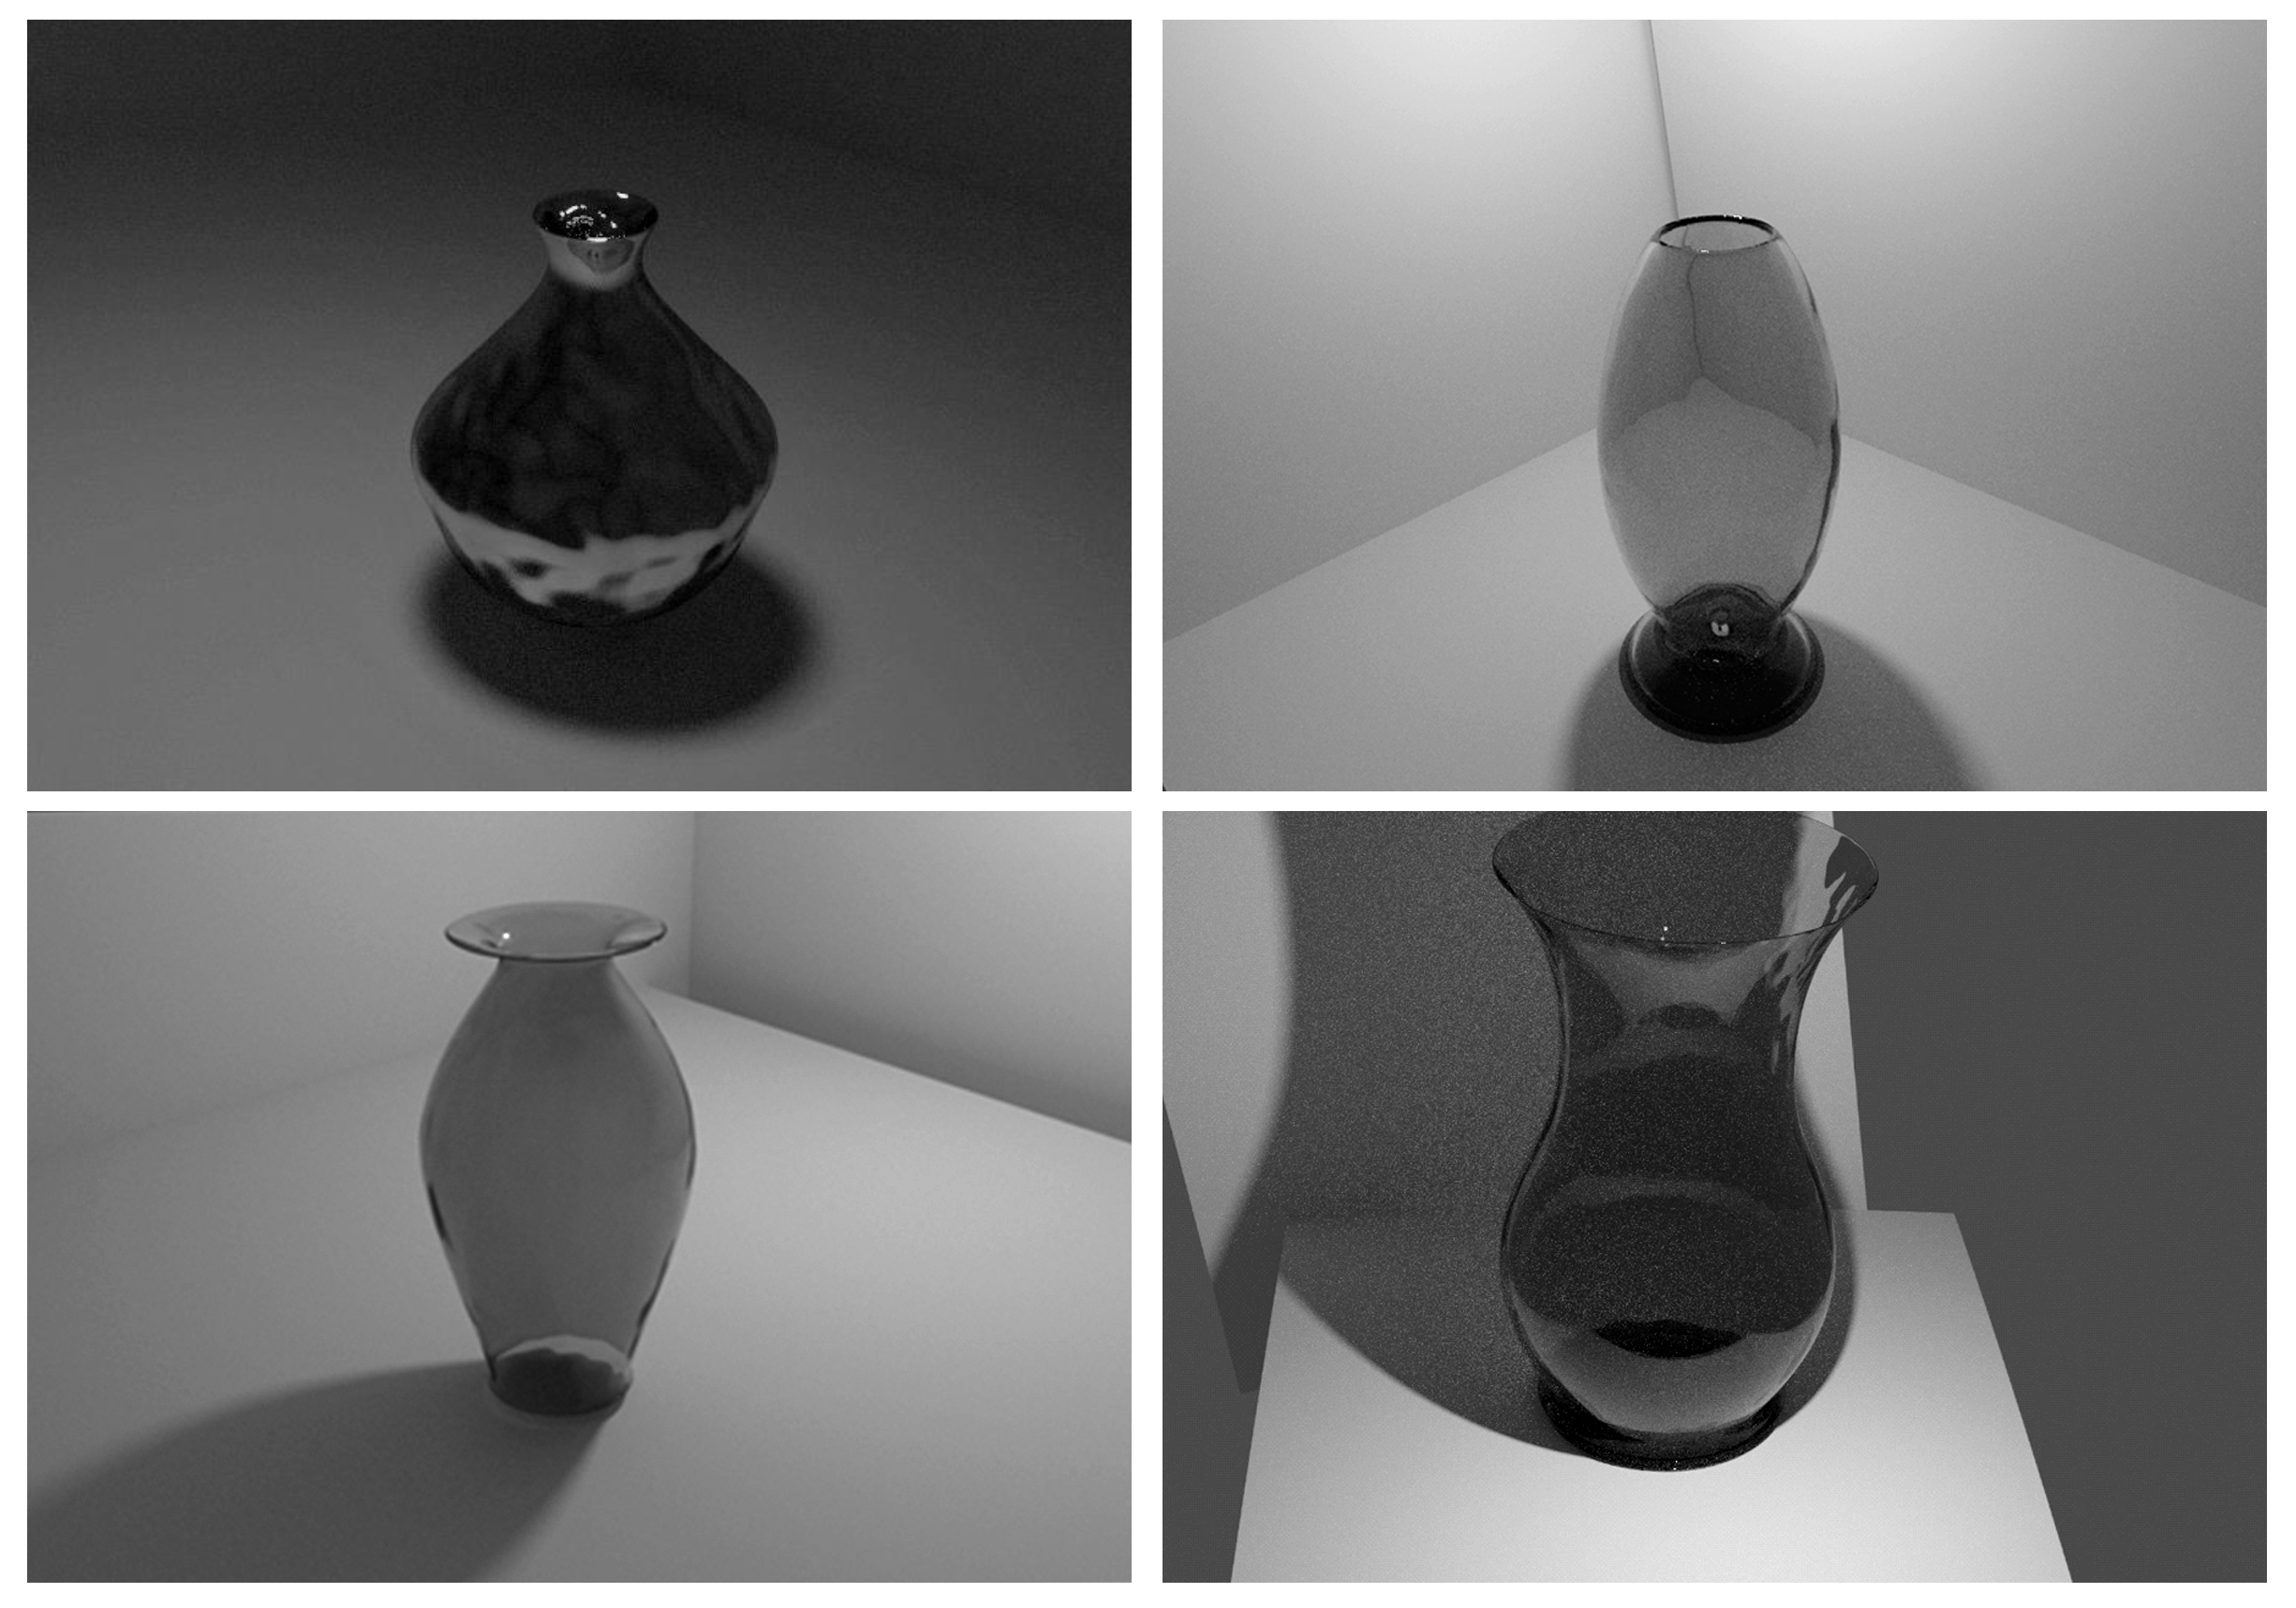 Примеры отчетных работ обучающихся по созданию 3D-модели объектов из стекла